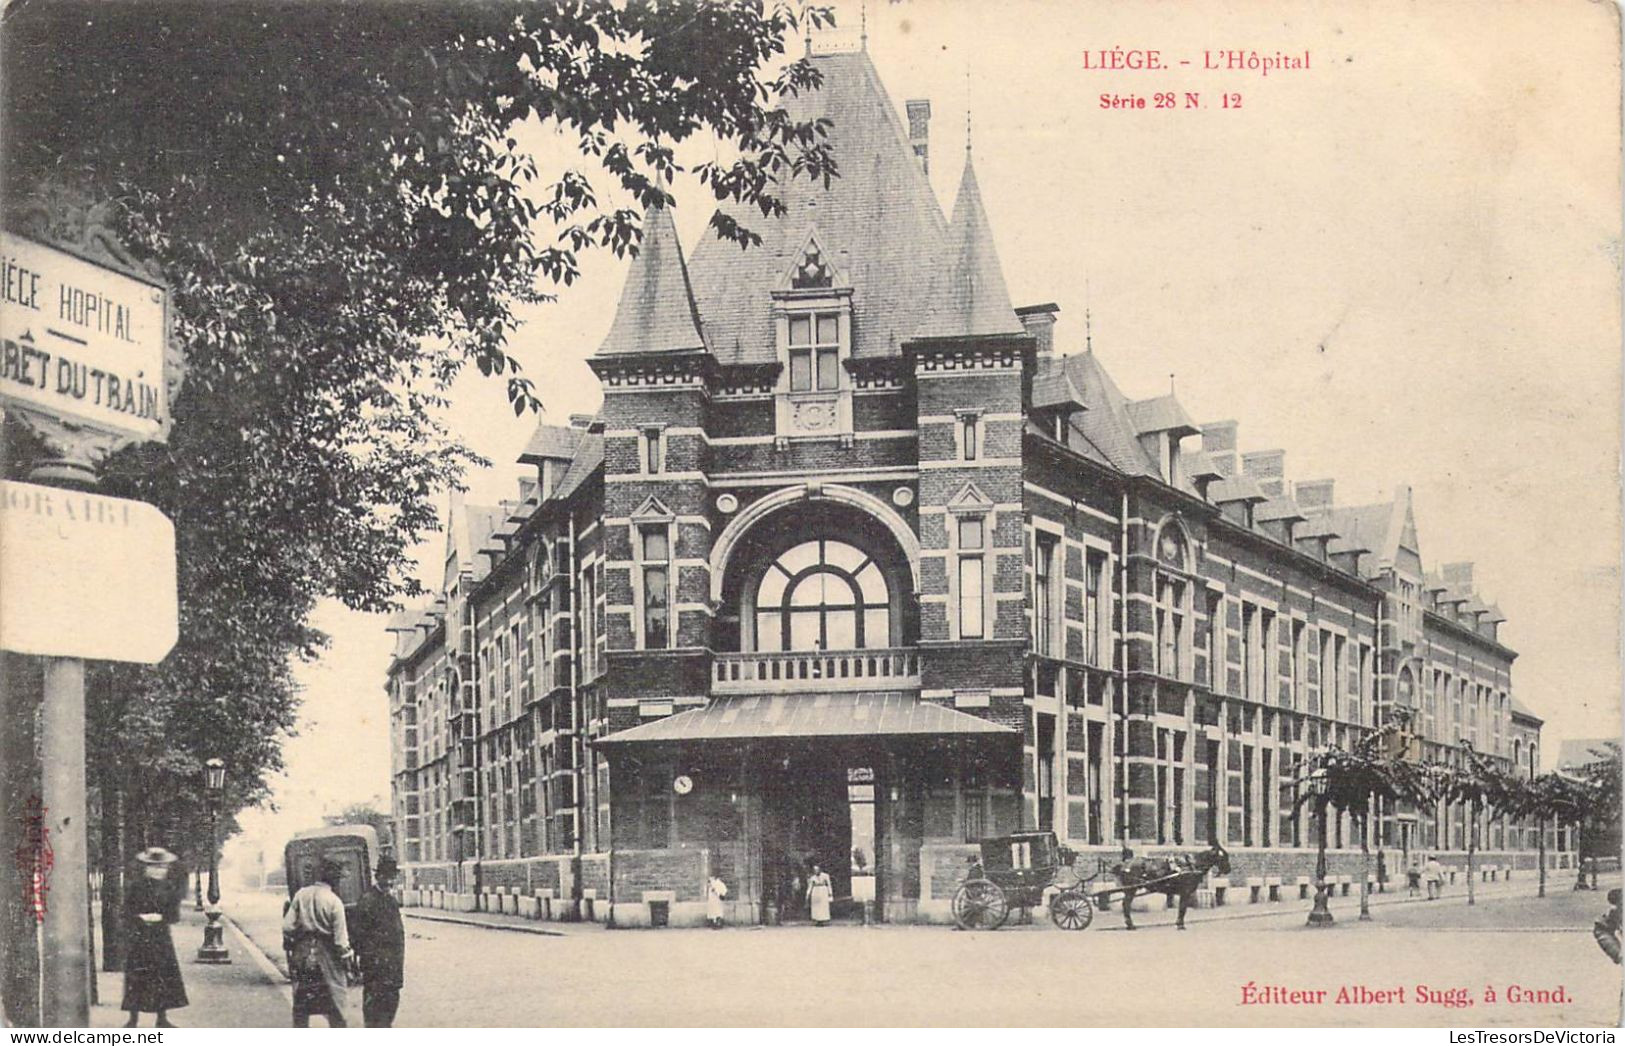 BELGIQUE - Liège - L'Hôpital - Carte Postale Ancienne - Lüttich